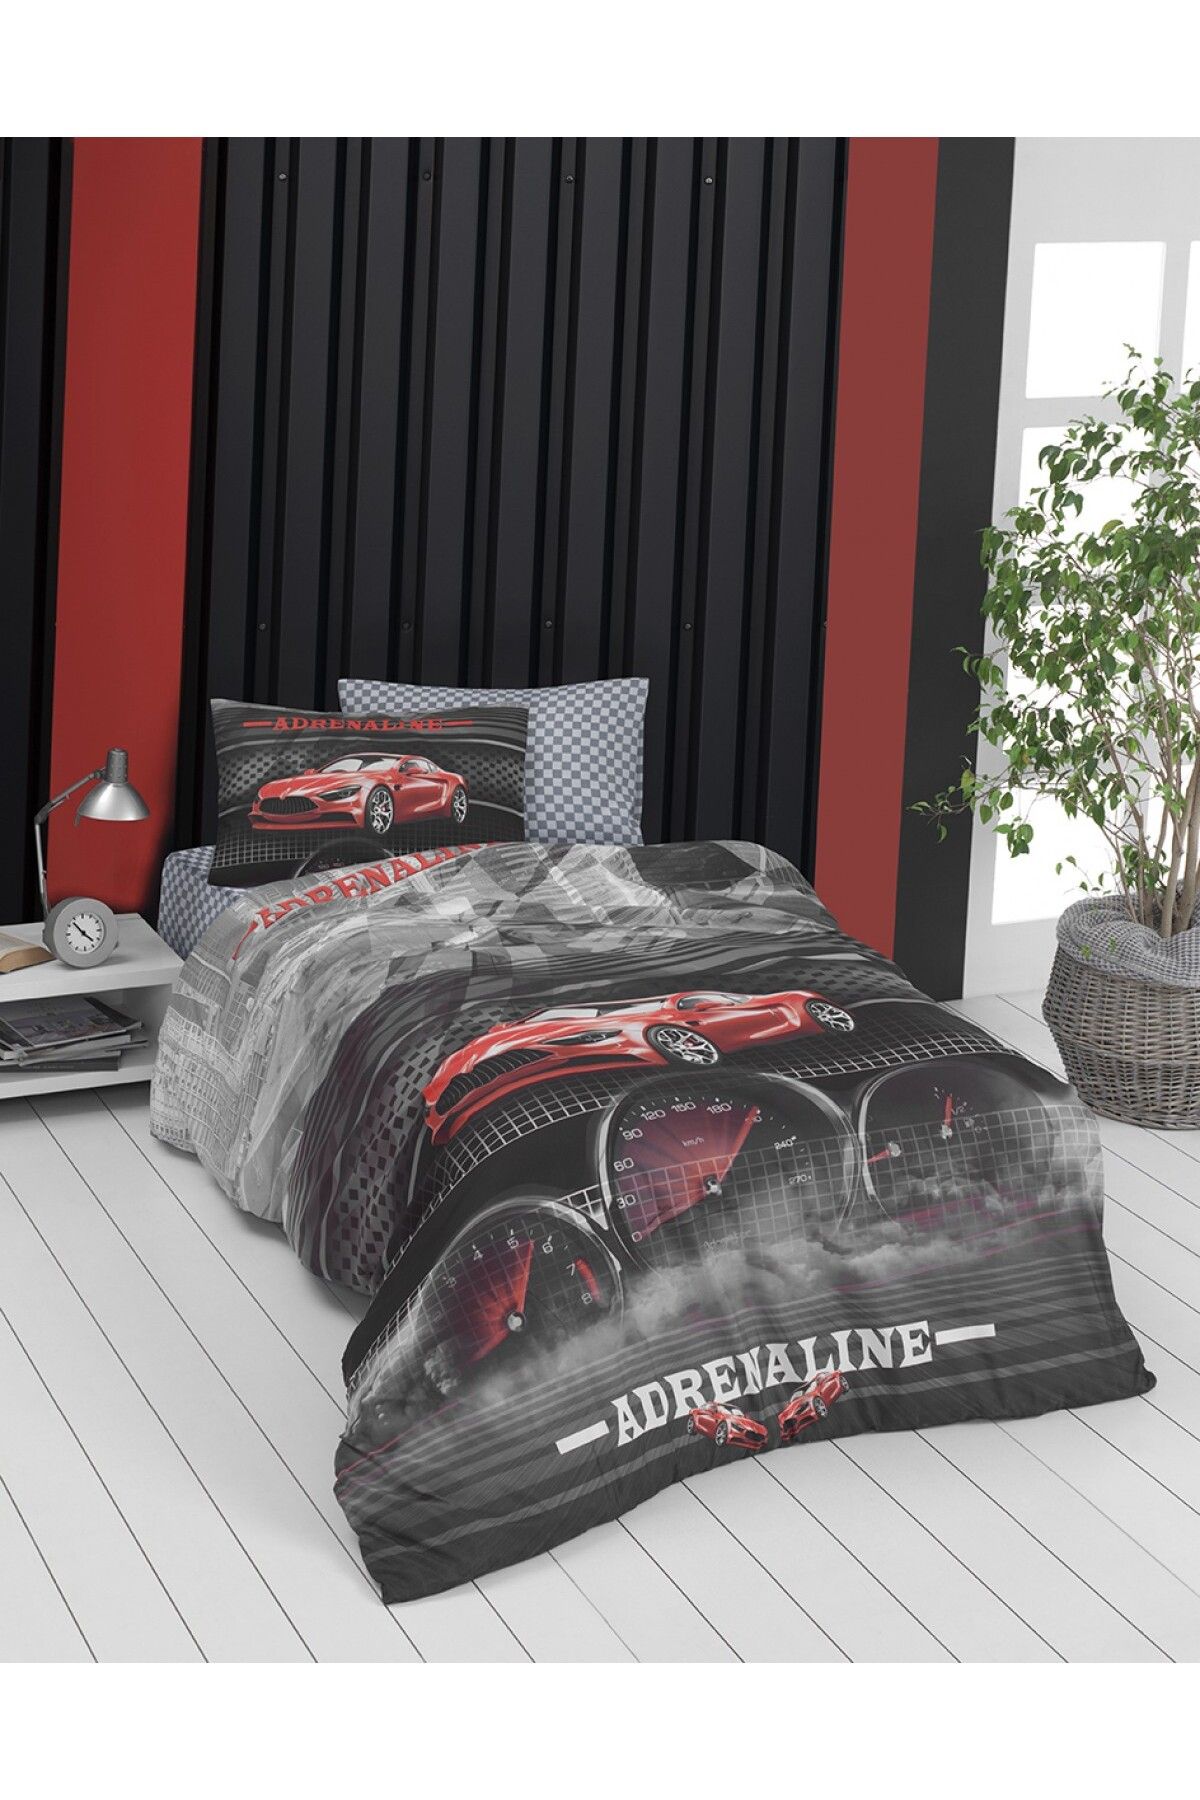 SAL10 Adrenaline Tek Kişilik Uyku Seti Yatak Örtüsü  + Yastık Kılıfı